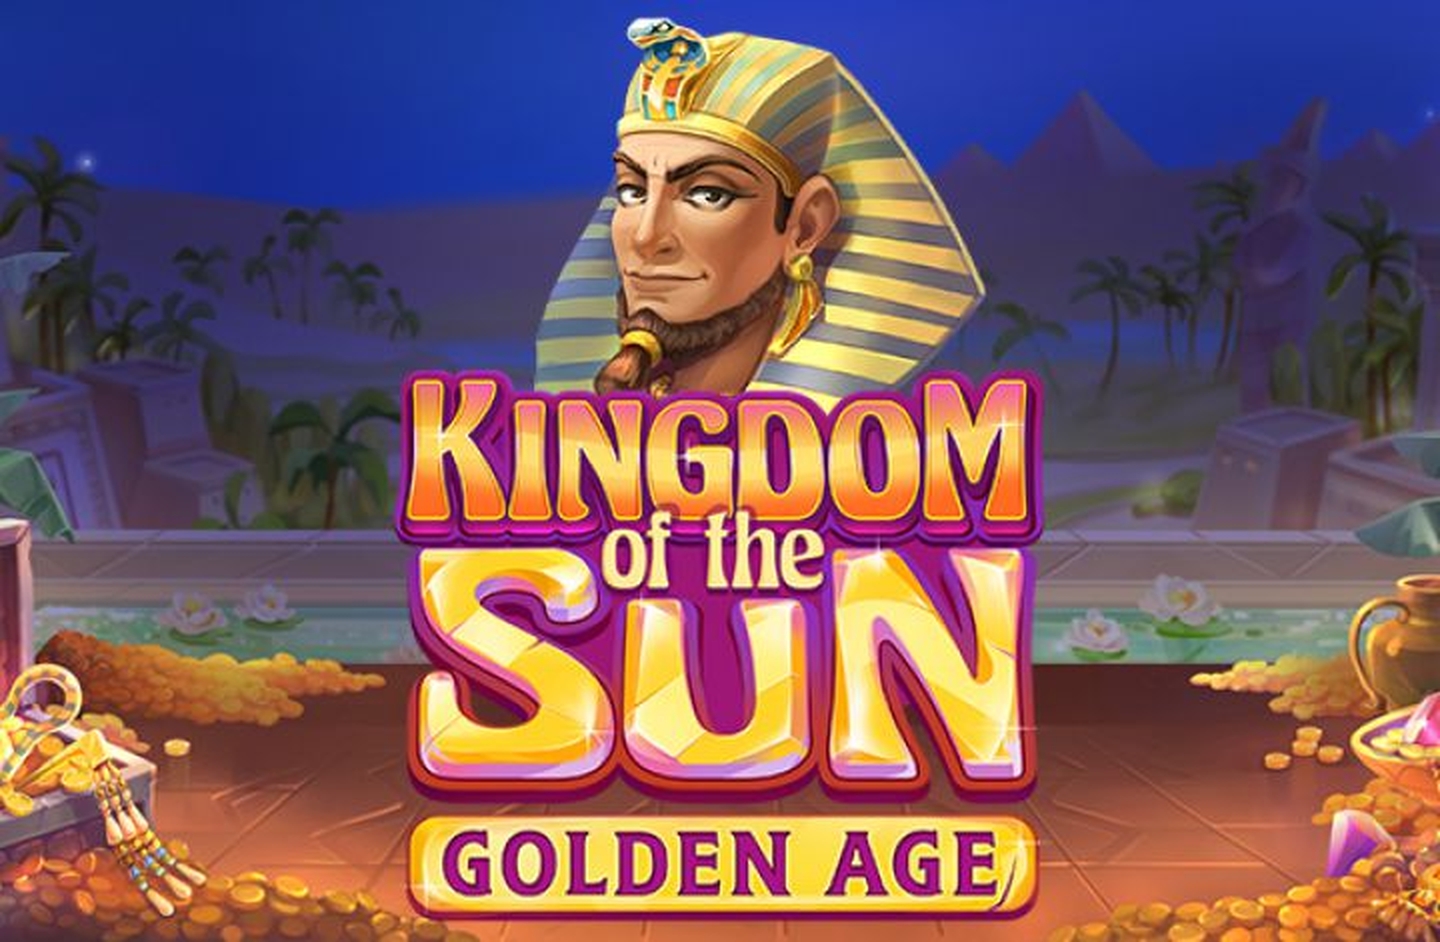 Kingdom of the Sun: Golden Age demo